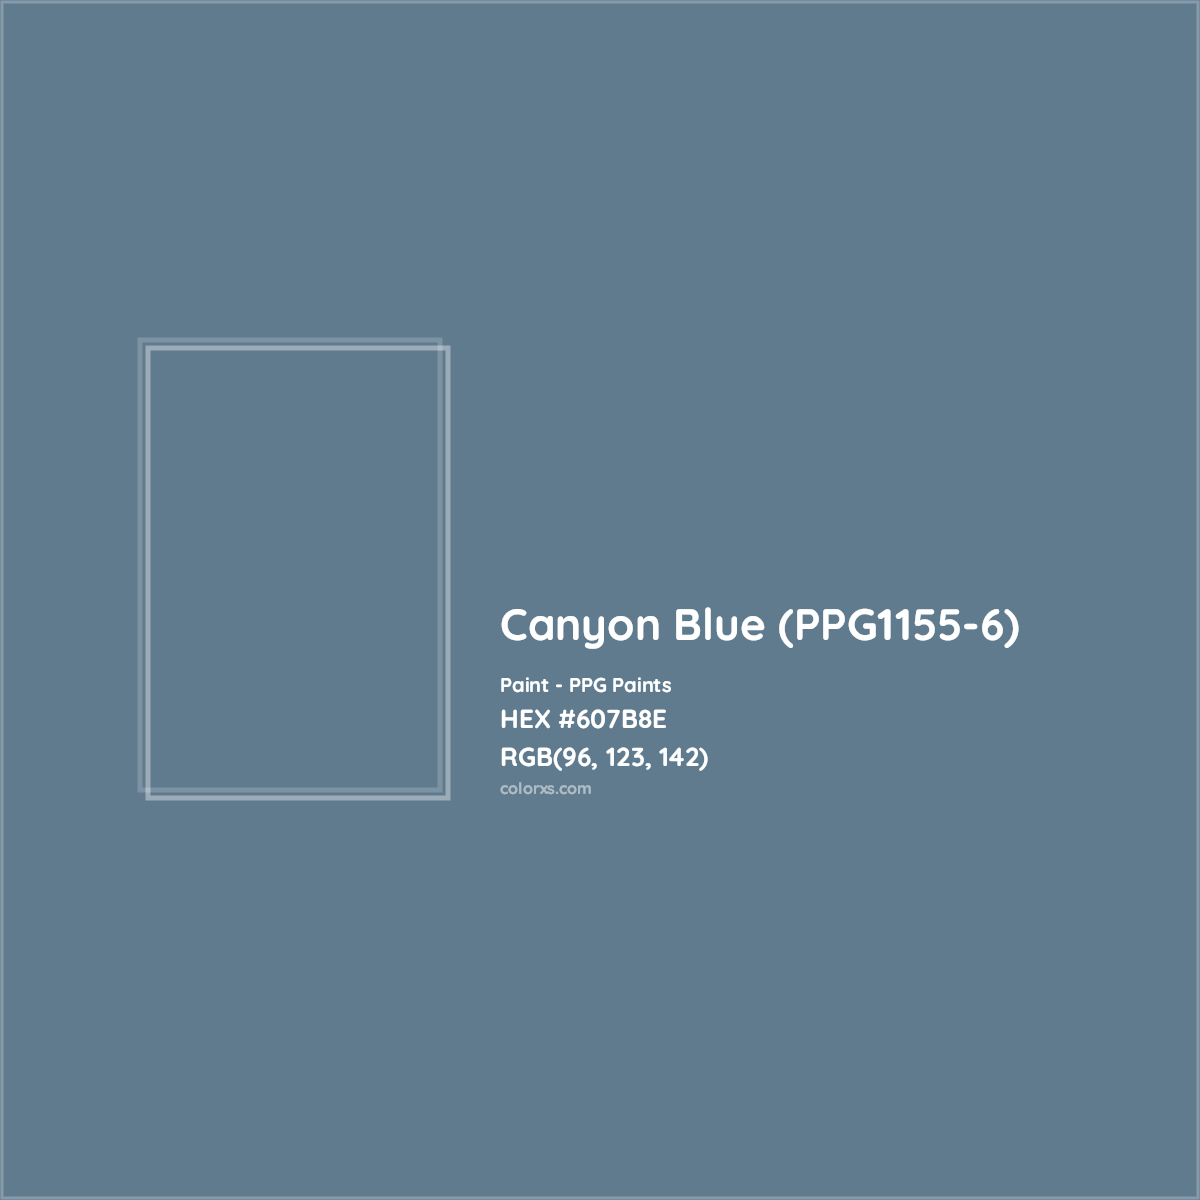 HEX #607B8E Canyon Blue (PPG1155-6) Paint PPG Paints - Color Code